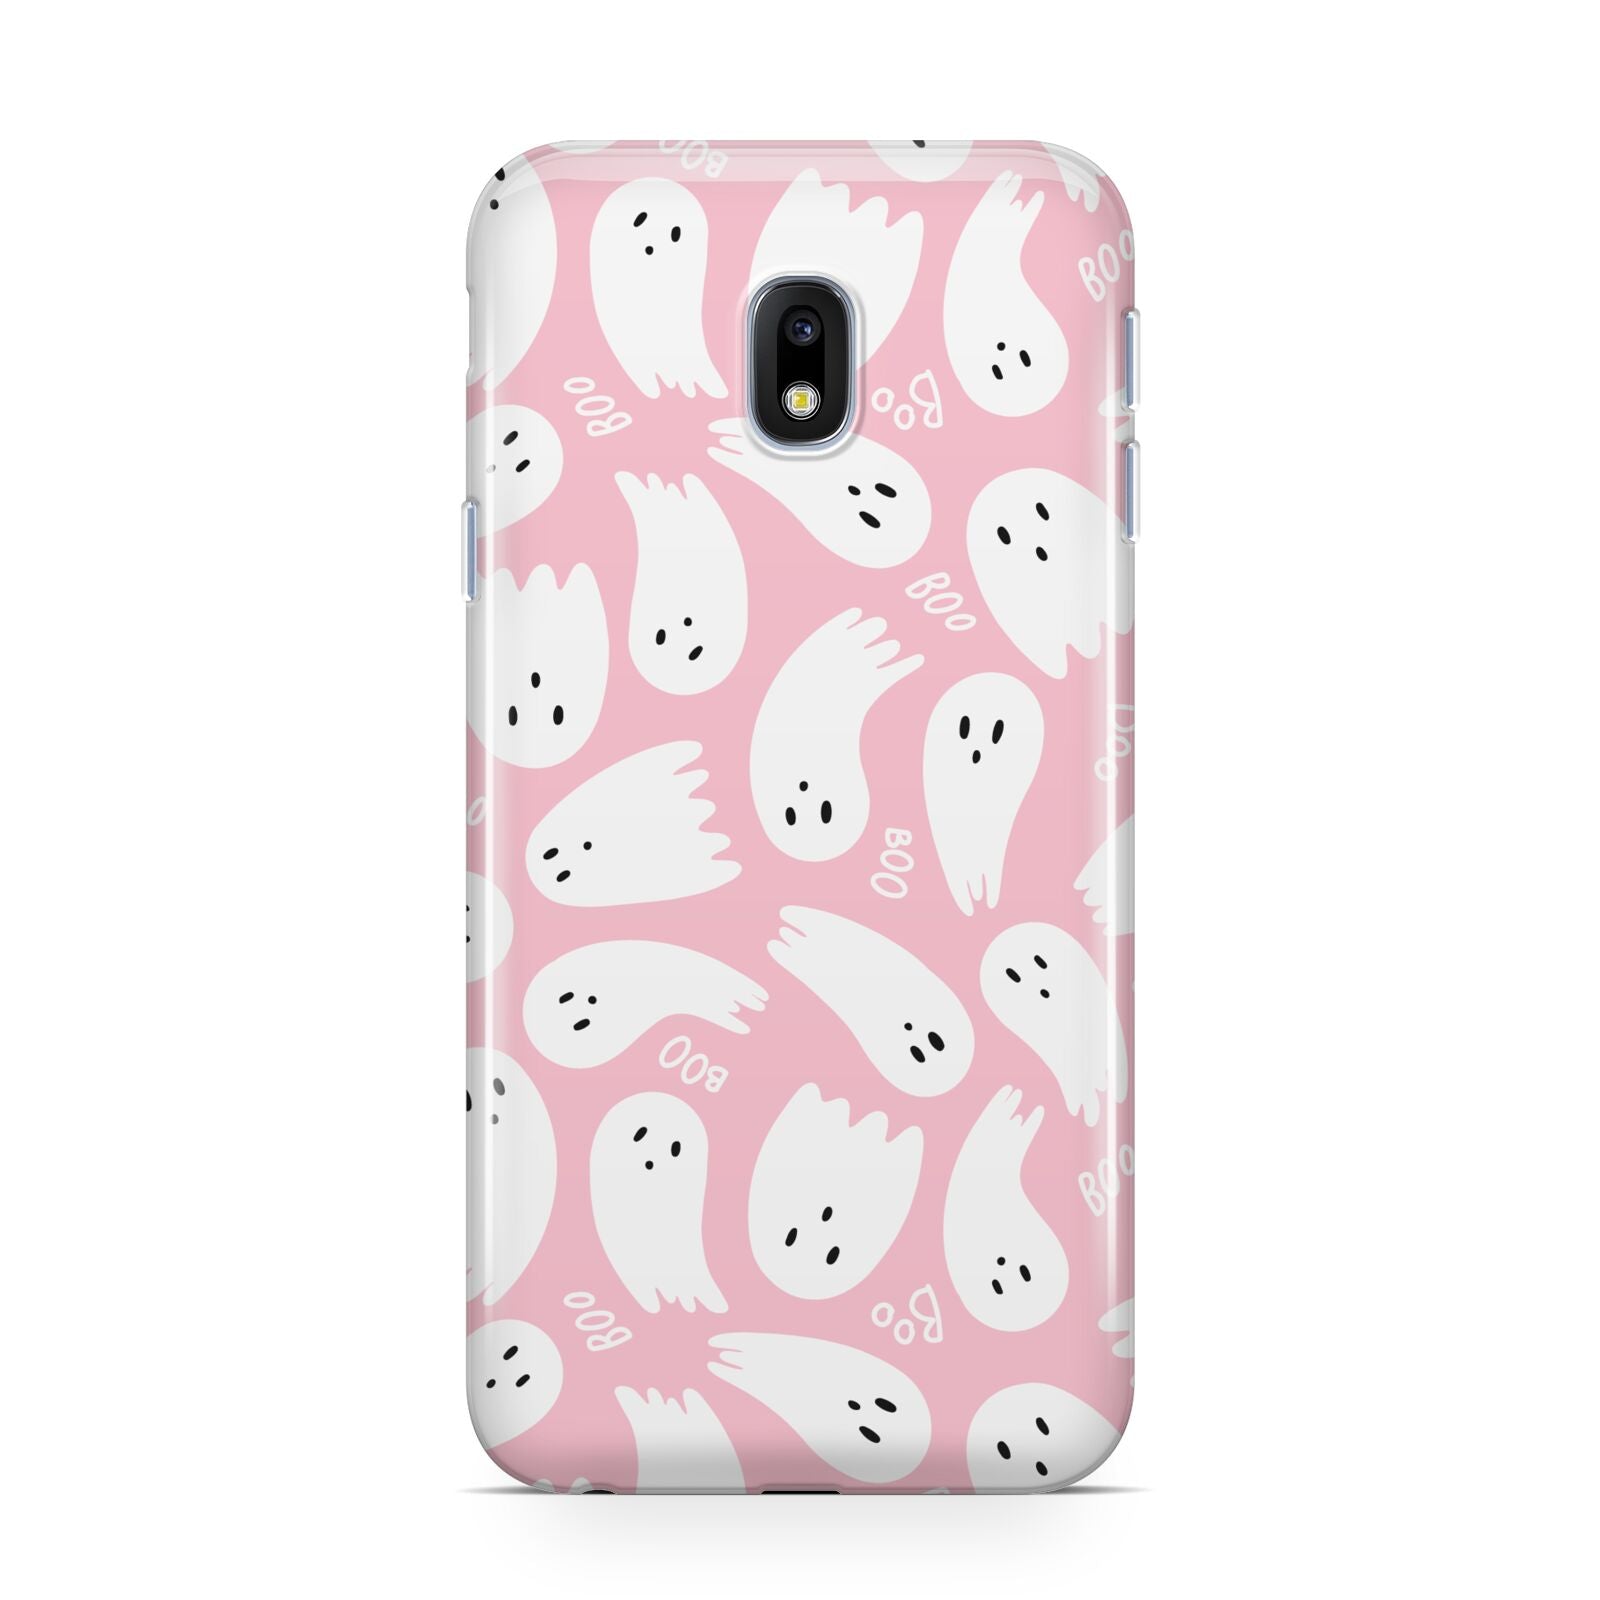 Pink Ghost Samsung Galaxy J3 2017 Case